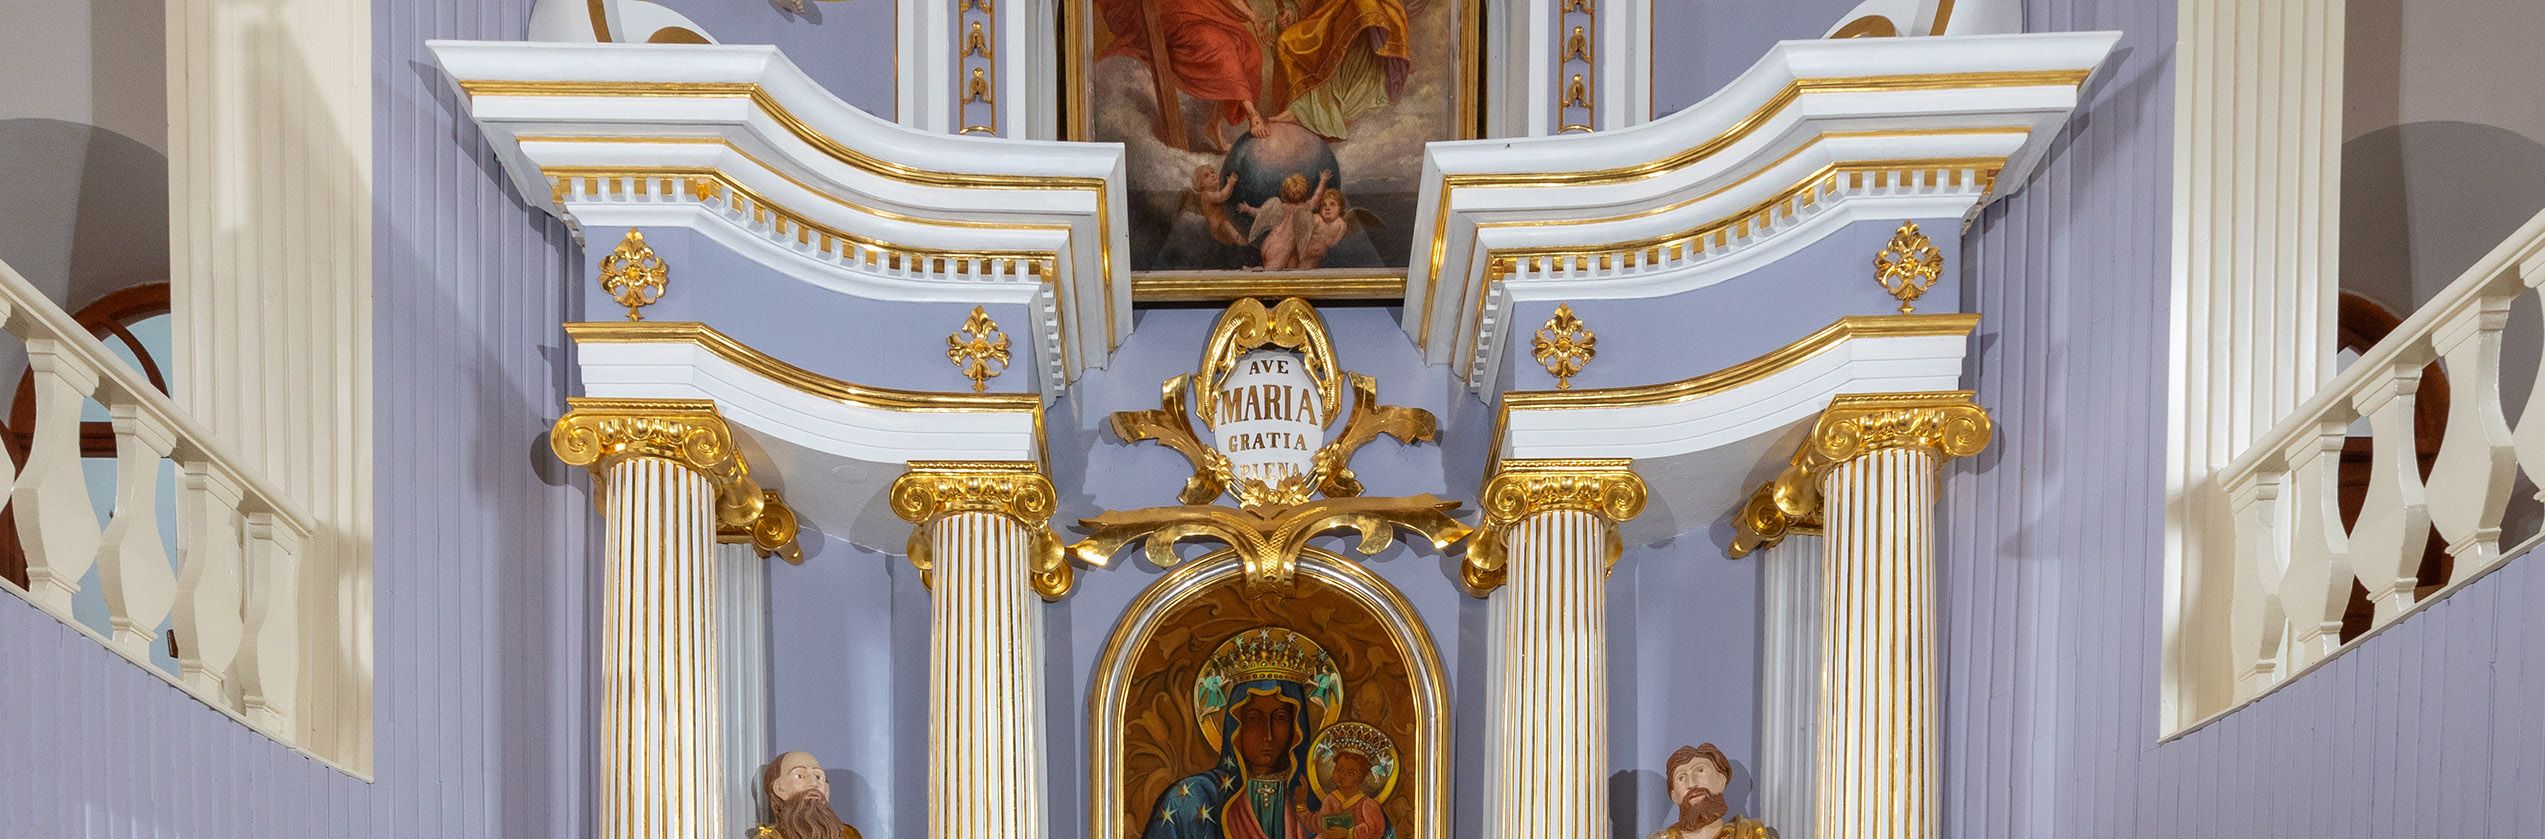 Zakrzówek - kościół pw. św. Mikołaja